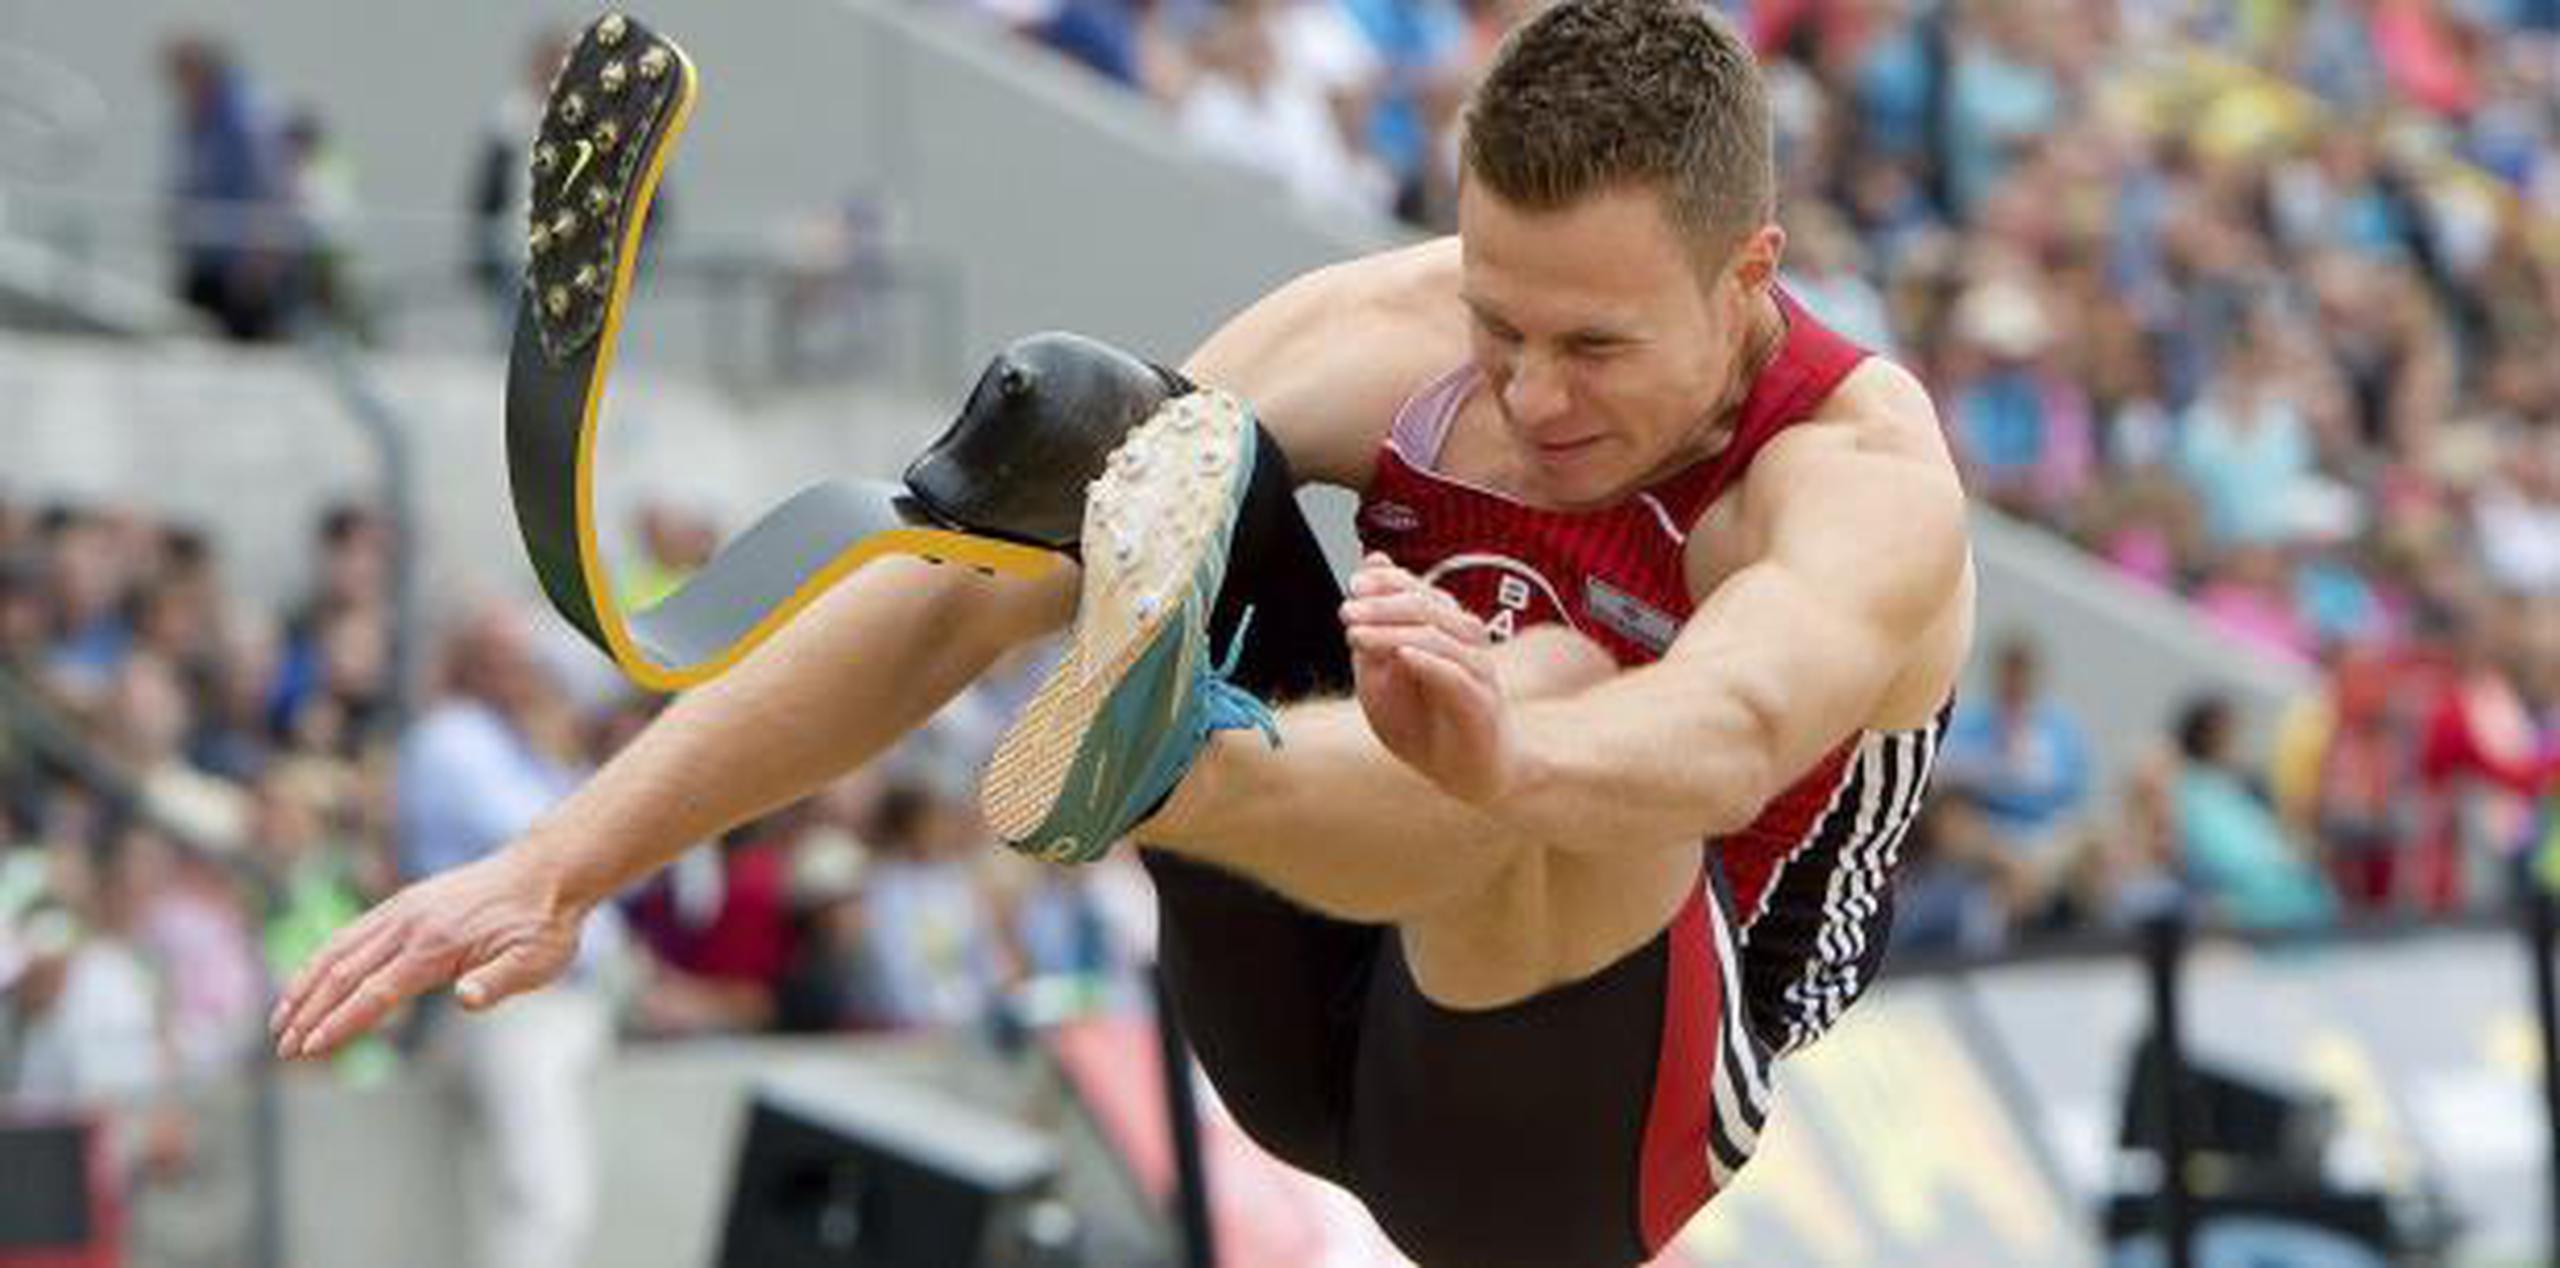 El saltador de longitud alemán Markus Rehm es una de las estrellas actuales del deporte paralímpico. (EFE / Sven Hoppe)